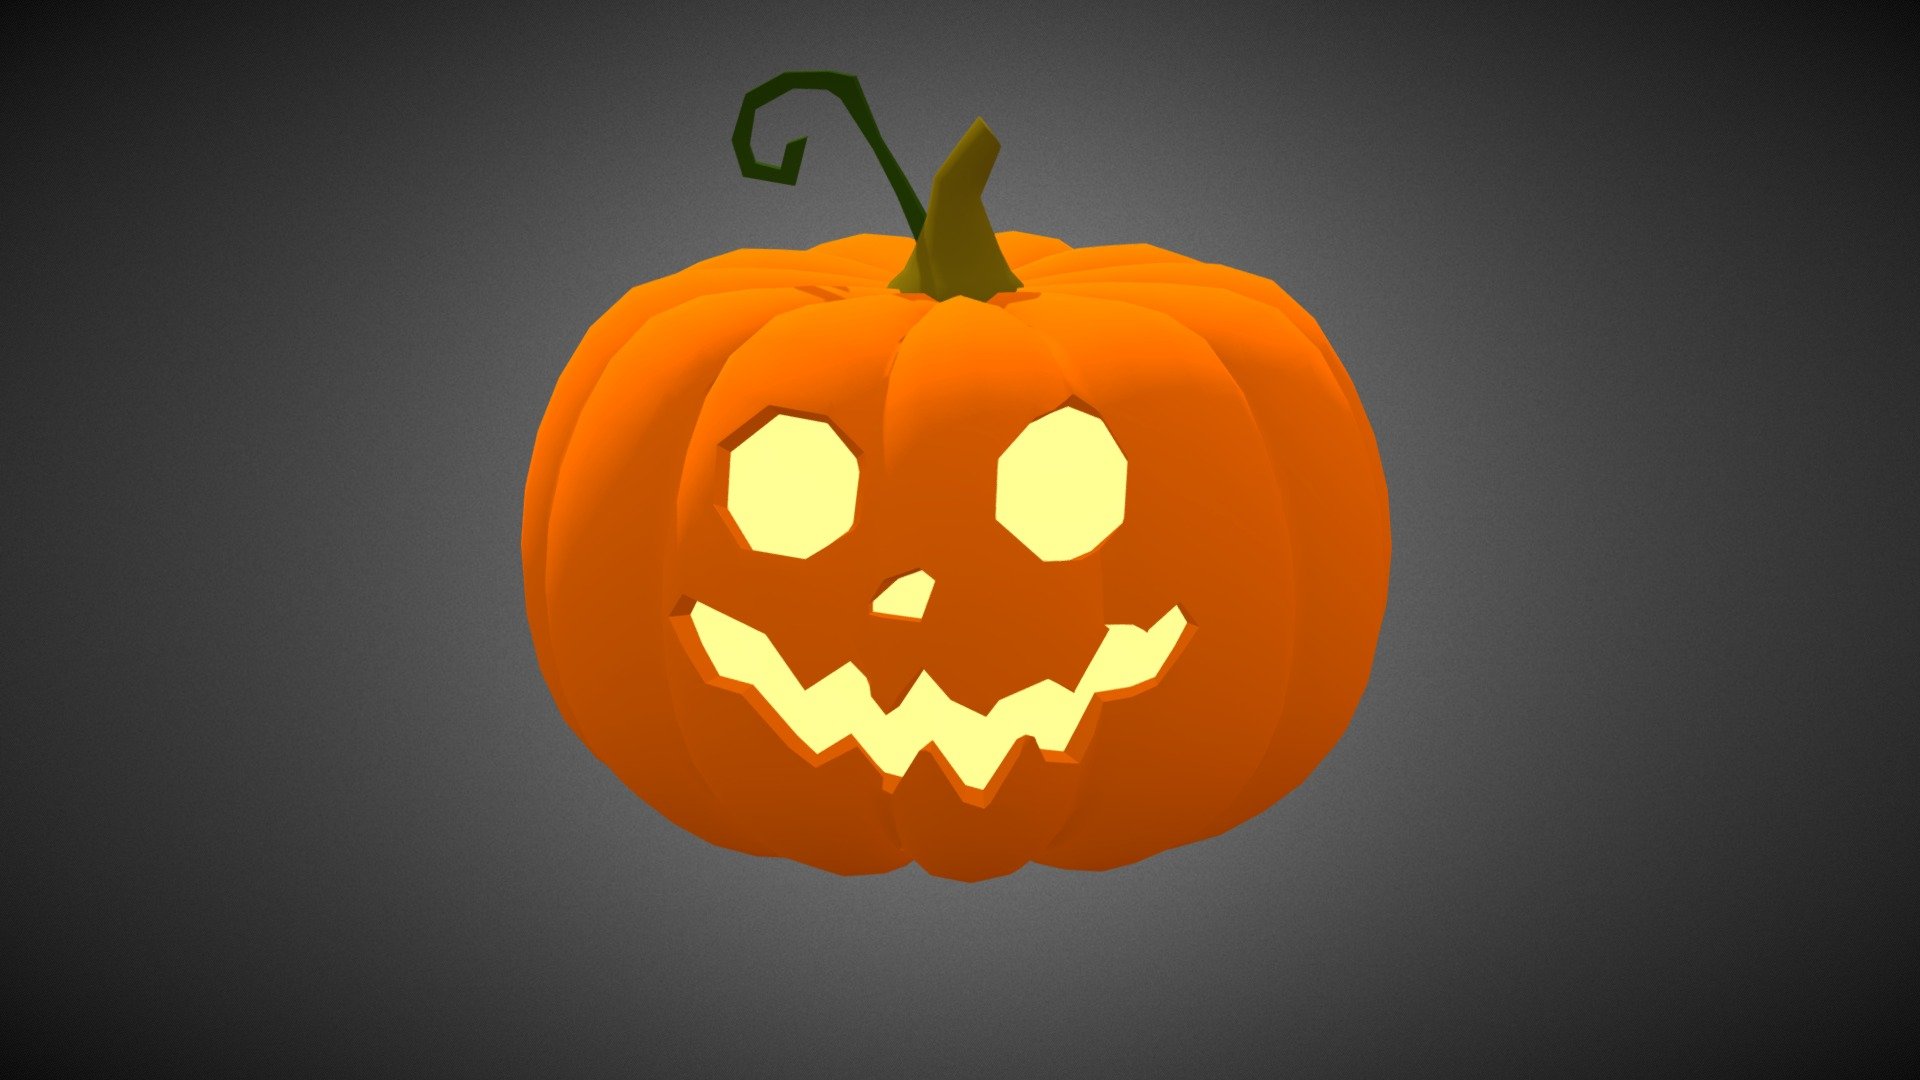 A funny Pumpkin for Halloween - Funny Pumpkin - 3D model by Michelle Schmidt (@michelleschmidt) 3d model